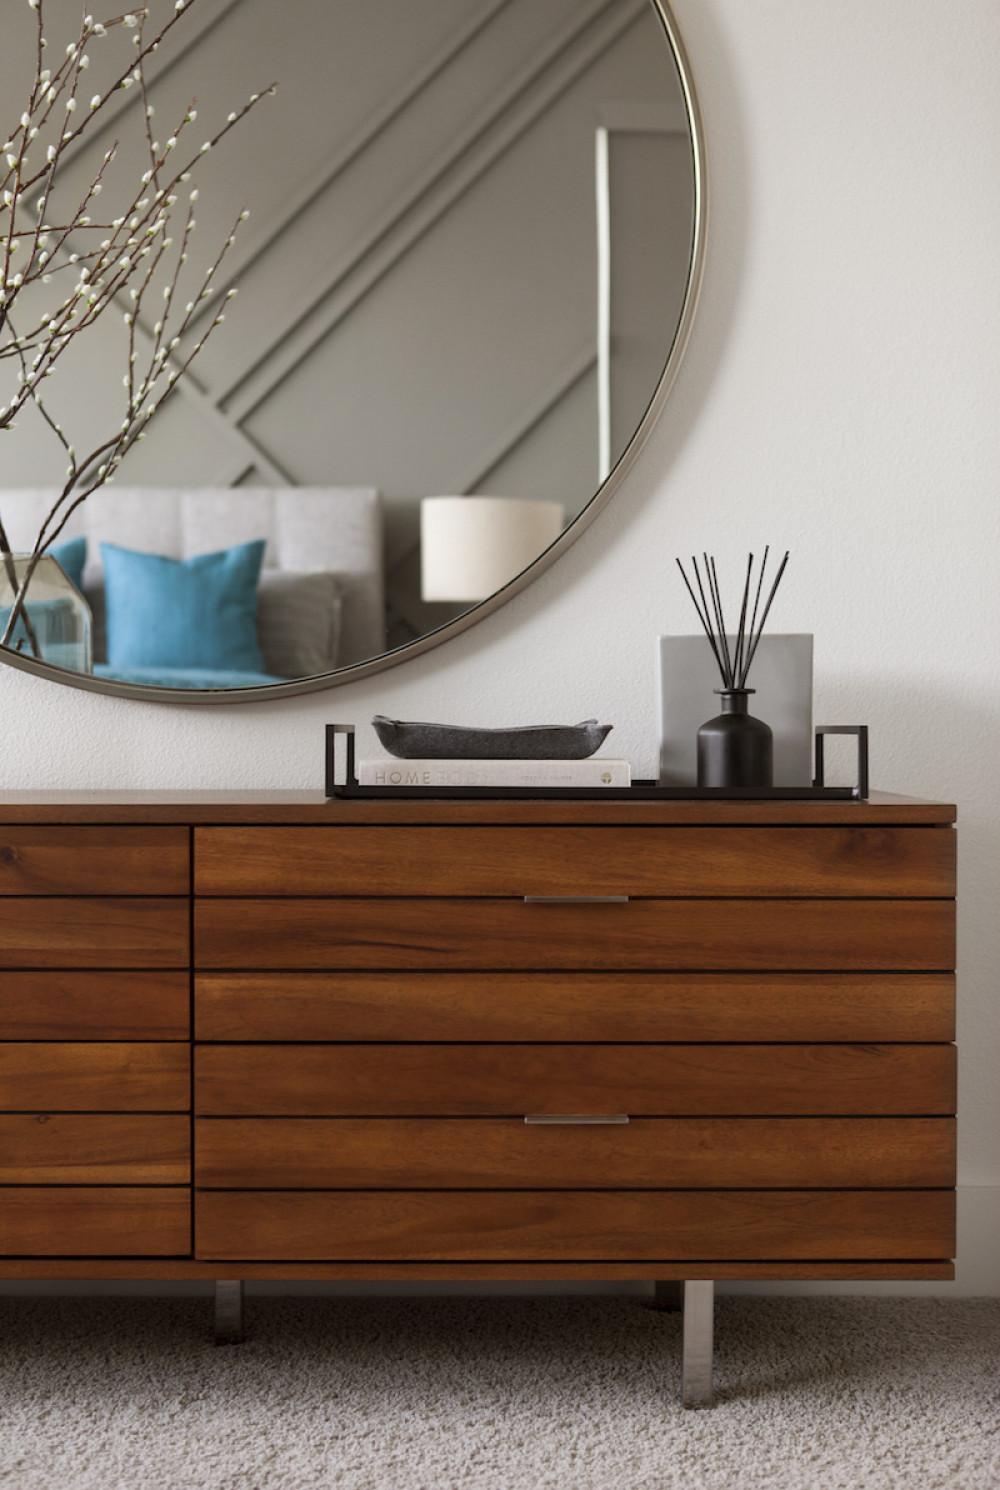 beyond-interior-design-bedroom-dresser-table-natural-wood